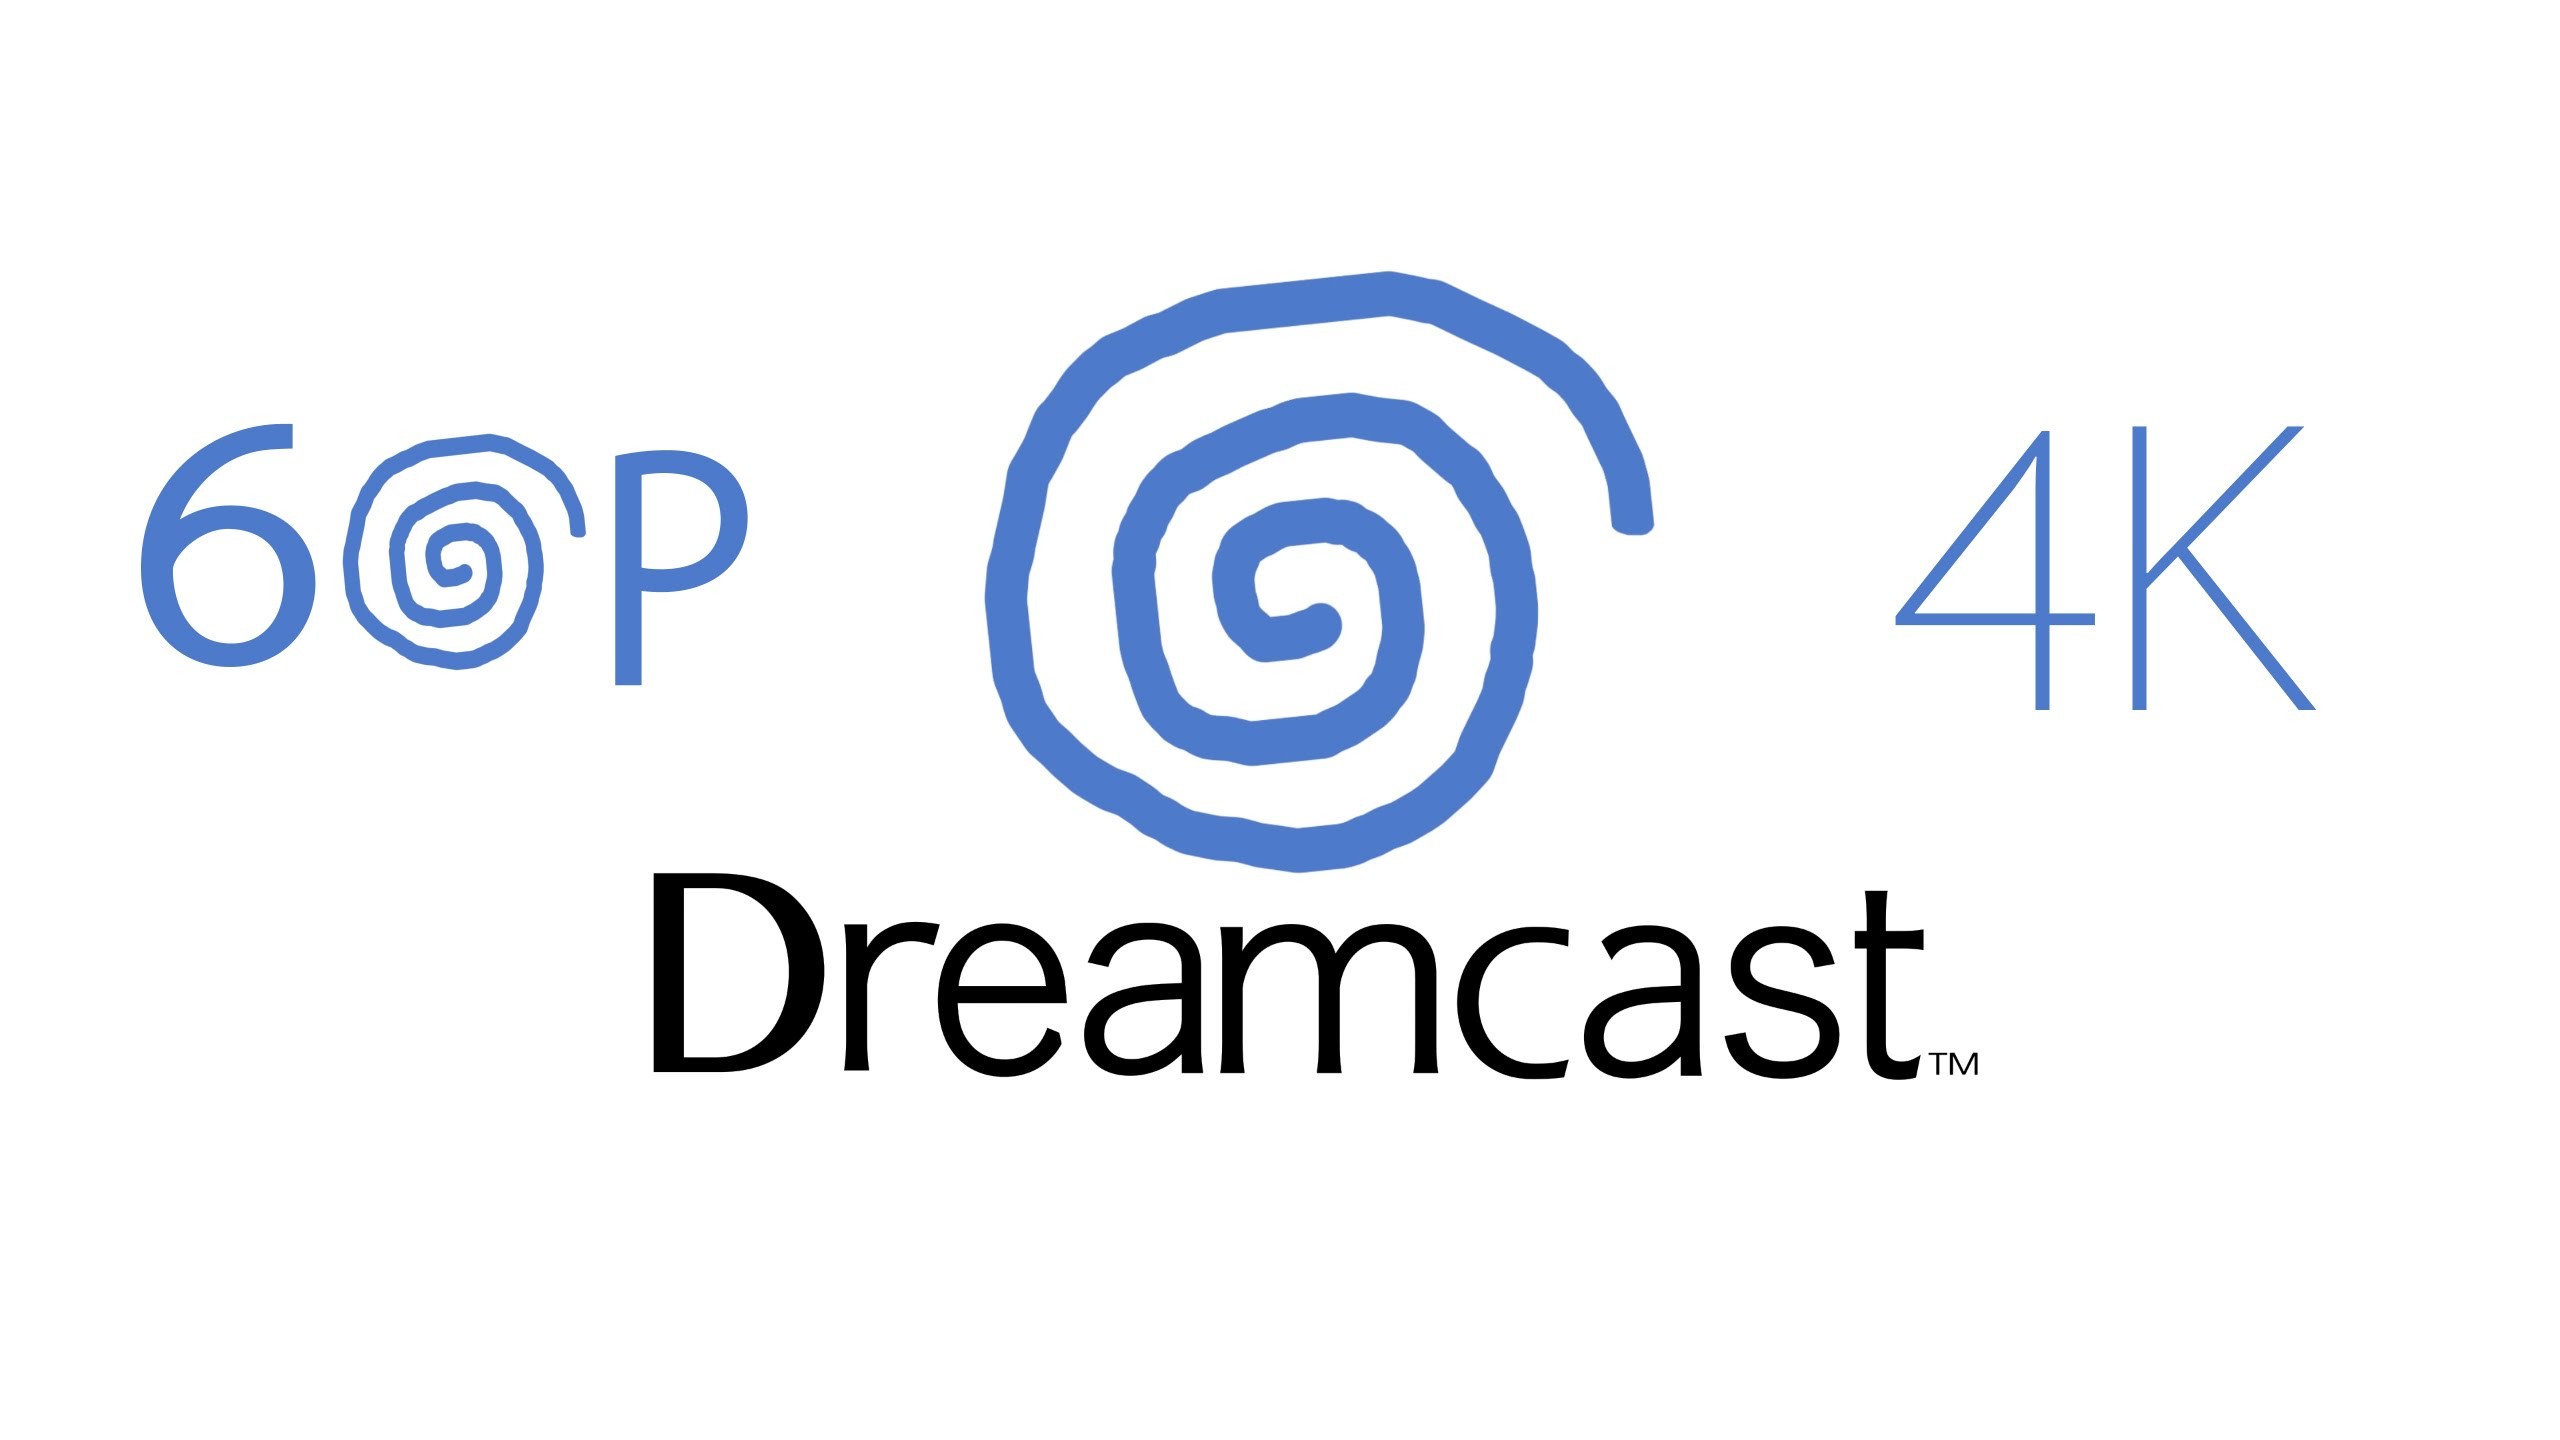 2560x1440 Remake Startup Sega Dreamcast ð in 4K 60P FanMade - Boot-up Dreamcast  Remastered - UHD - 2016